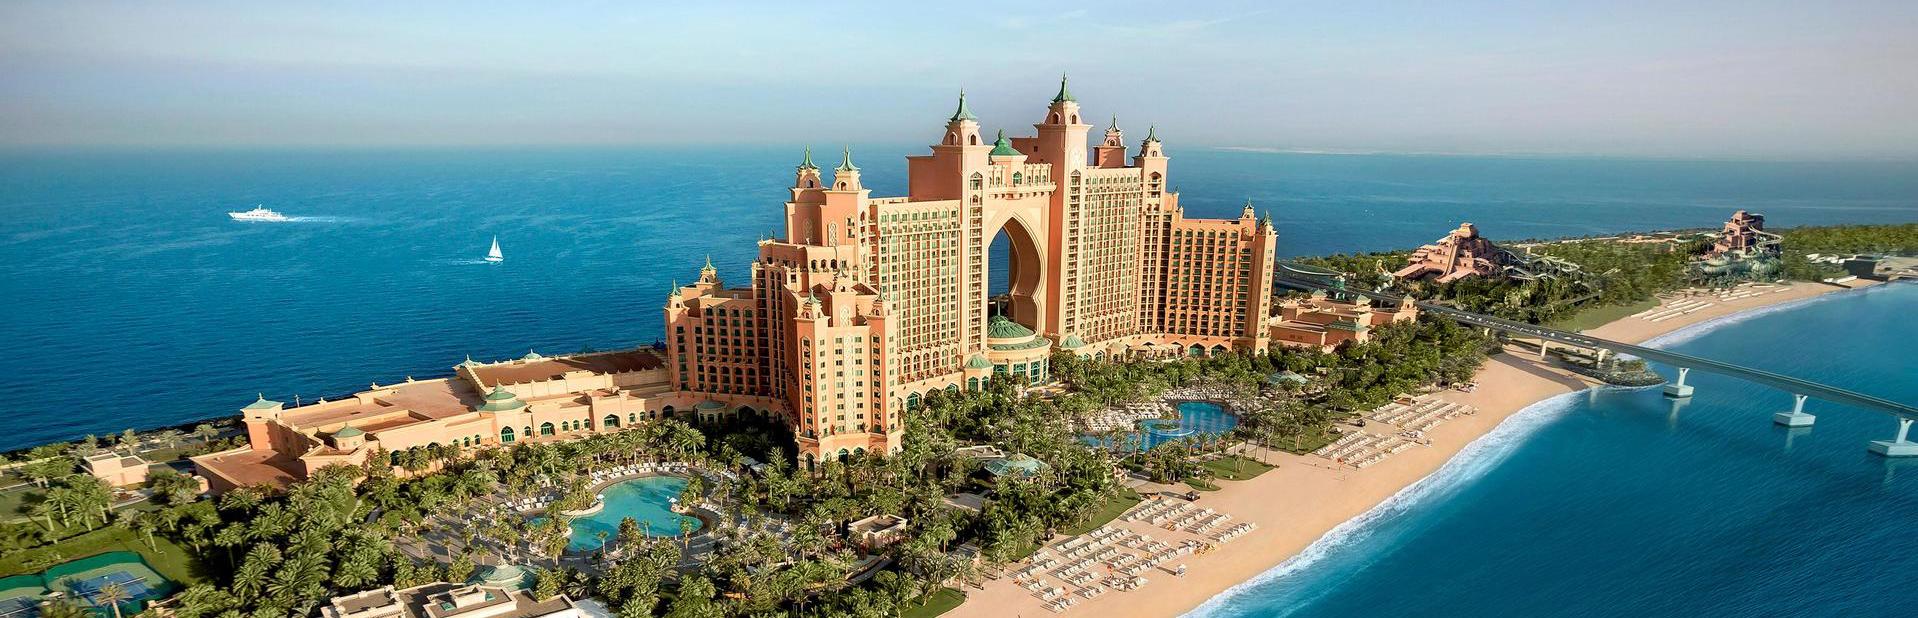 Отель Atlantis The Palm Dubai в Дубай